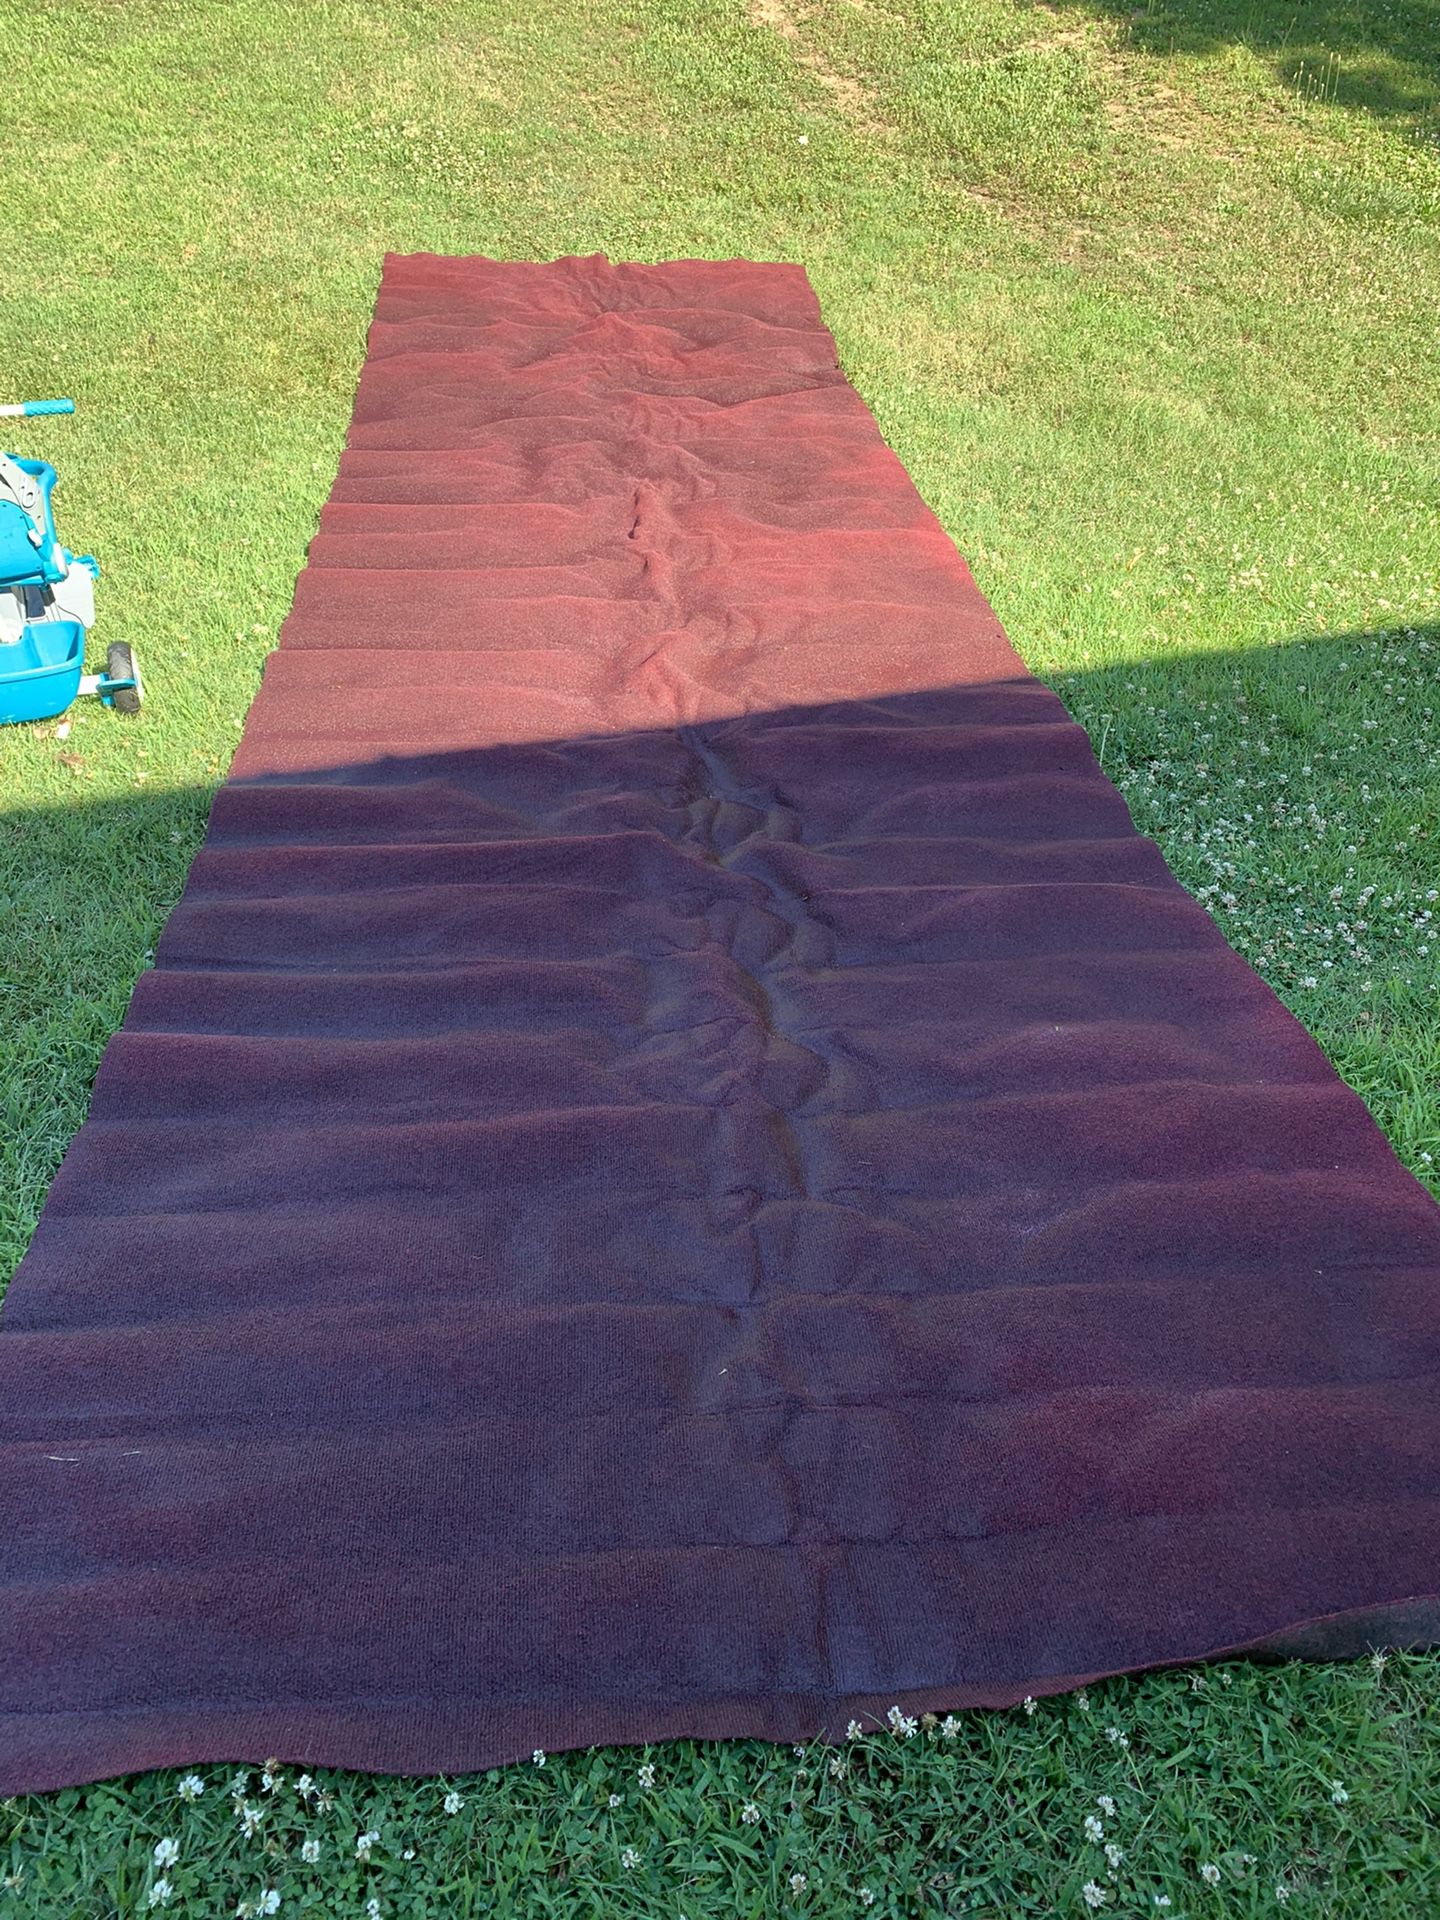 Outdoor rug